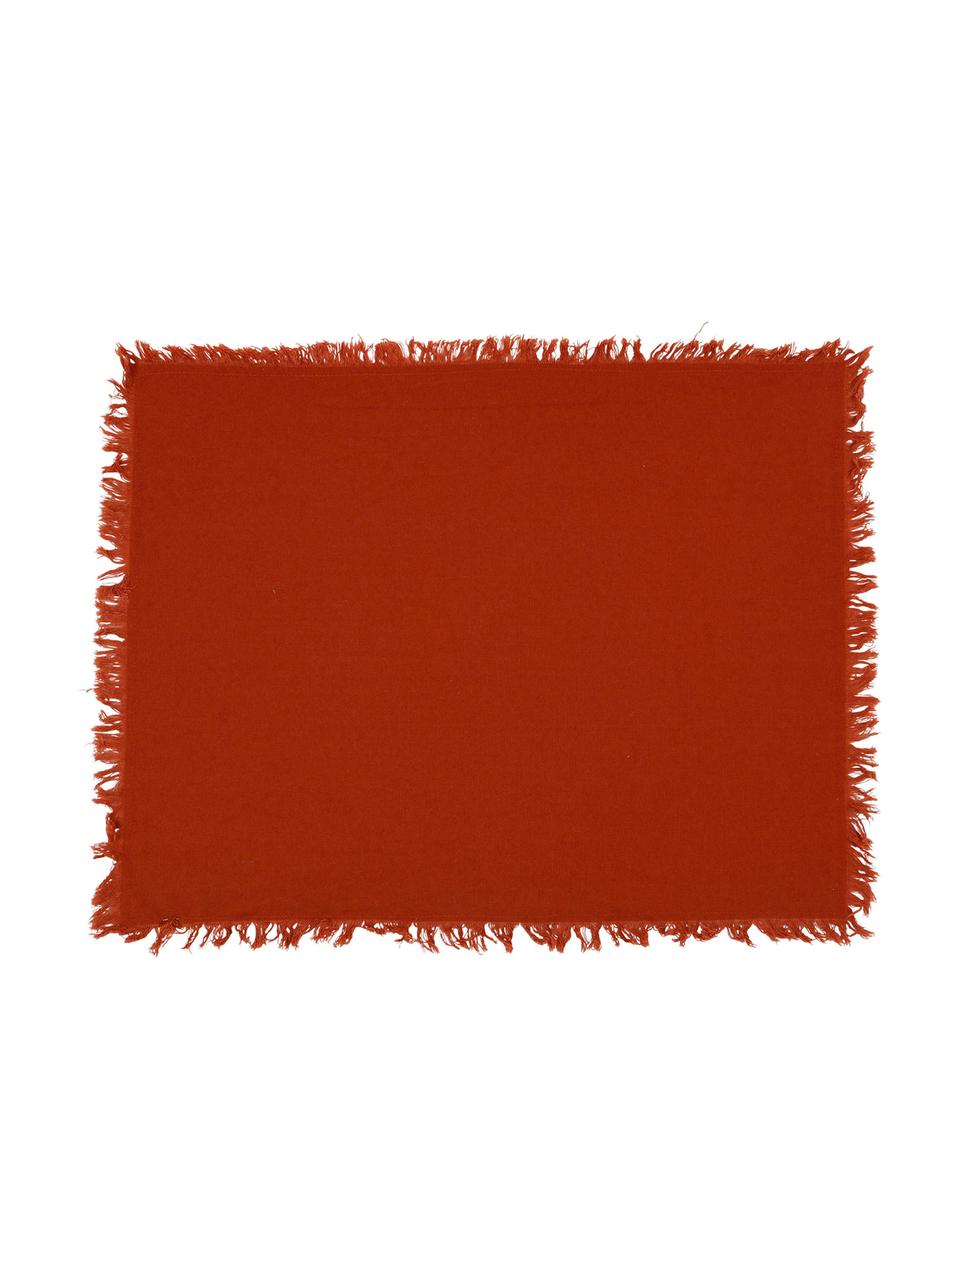 Baumwoll-Tischsets Nalia in Rot mit Fransen, 2 Stück, Baumwolle, Rot, B 40 x L 50 cm